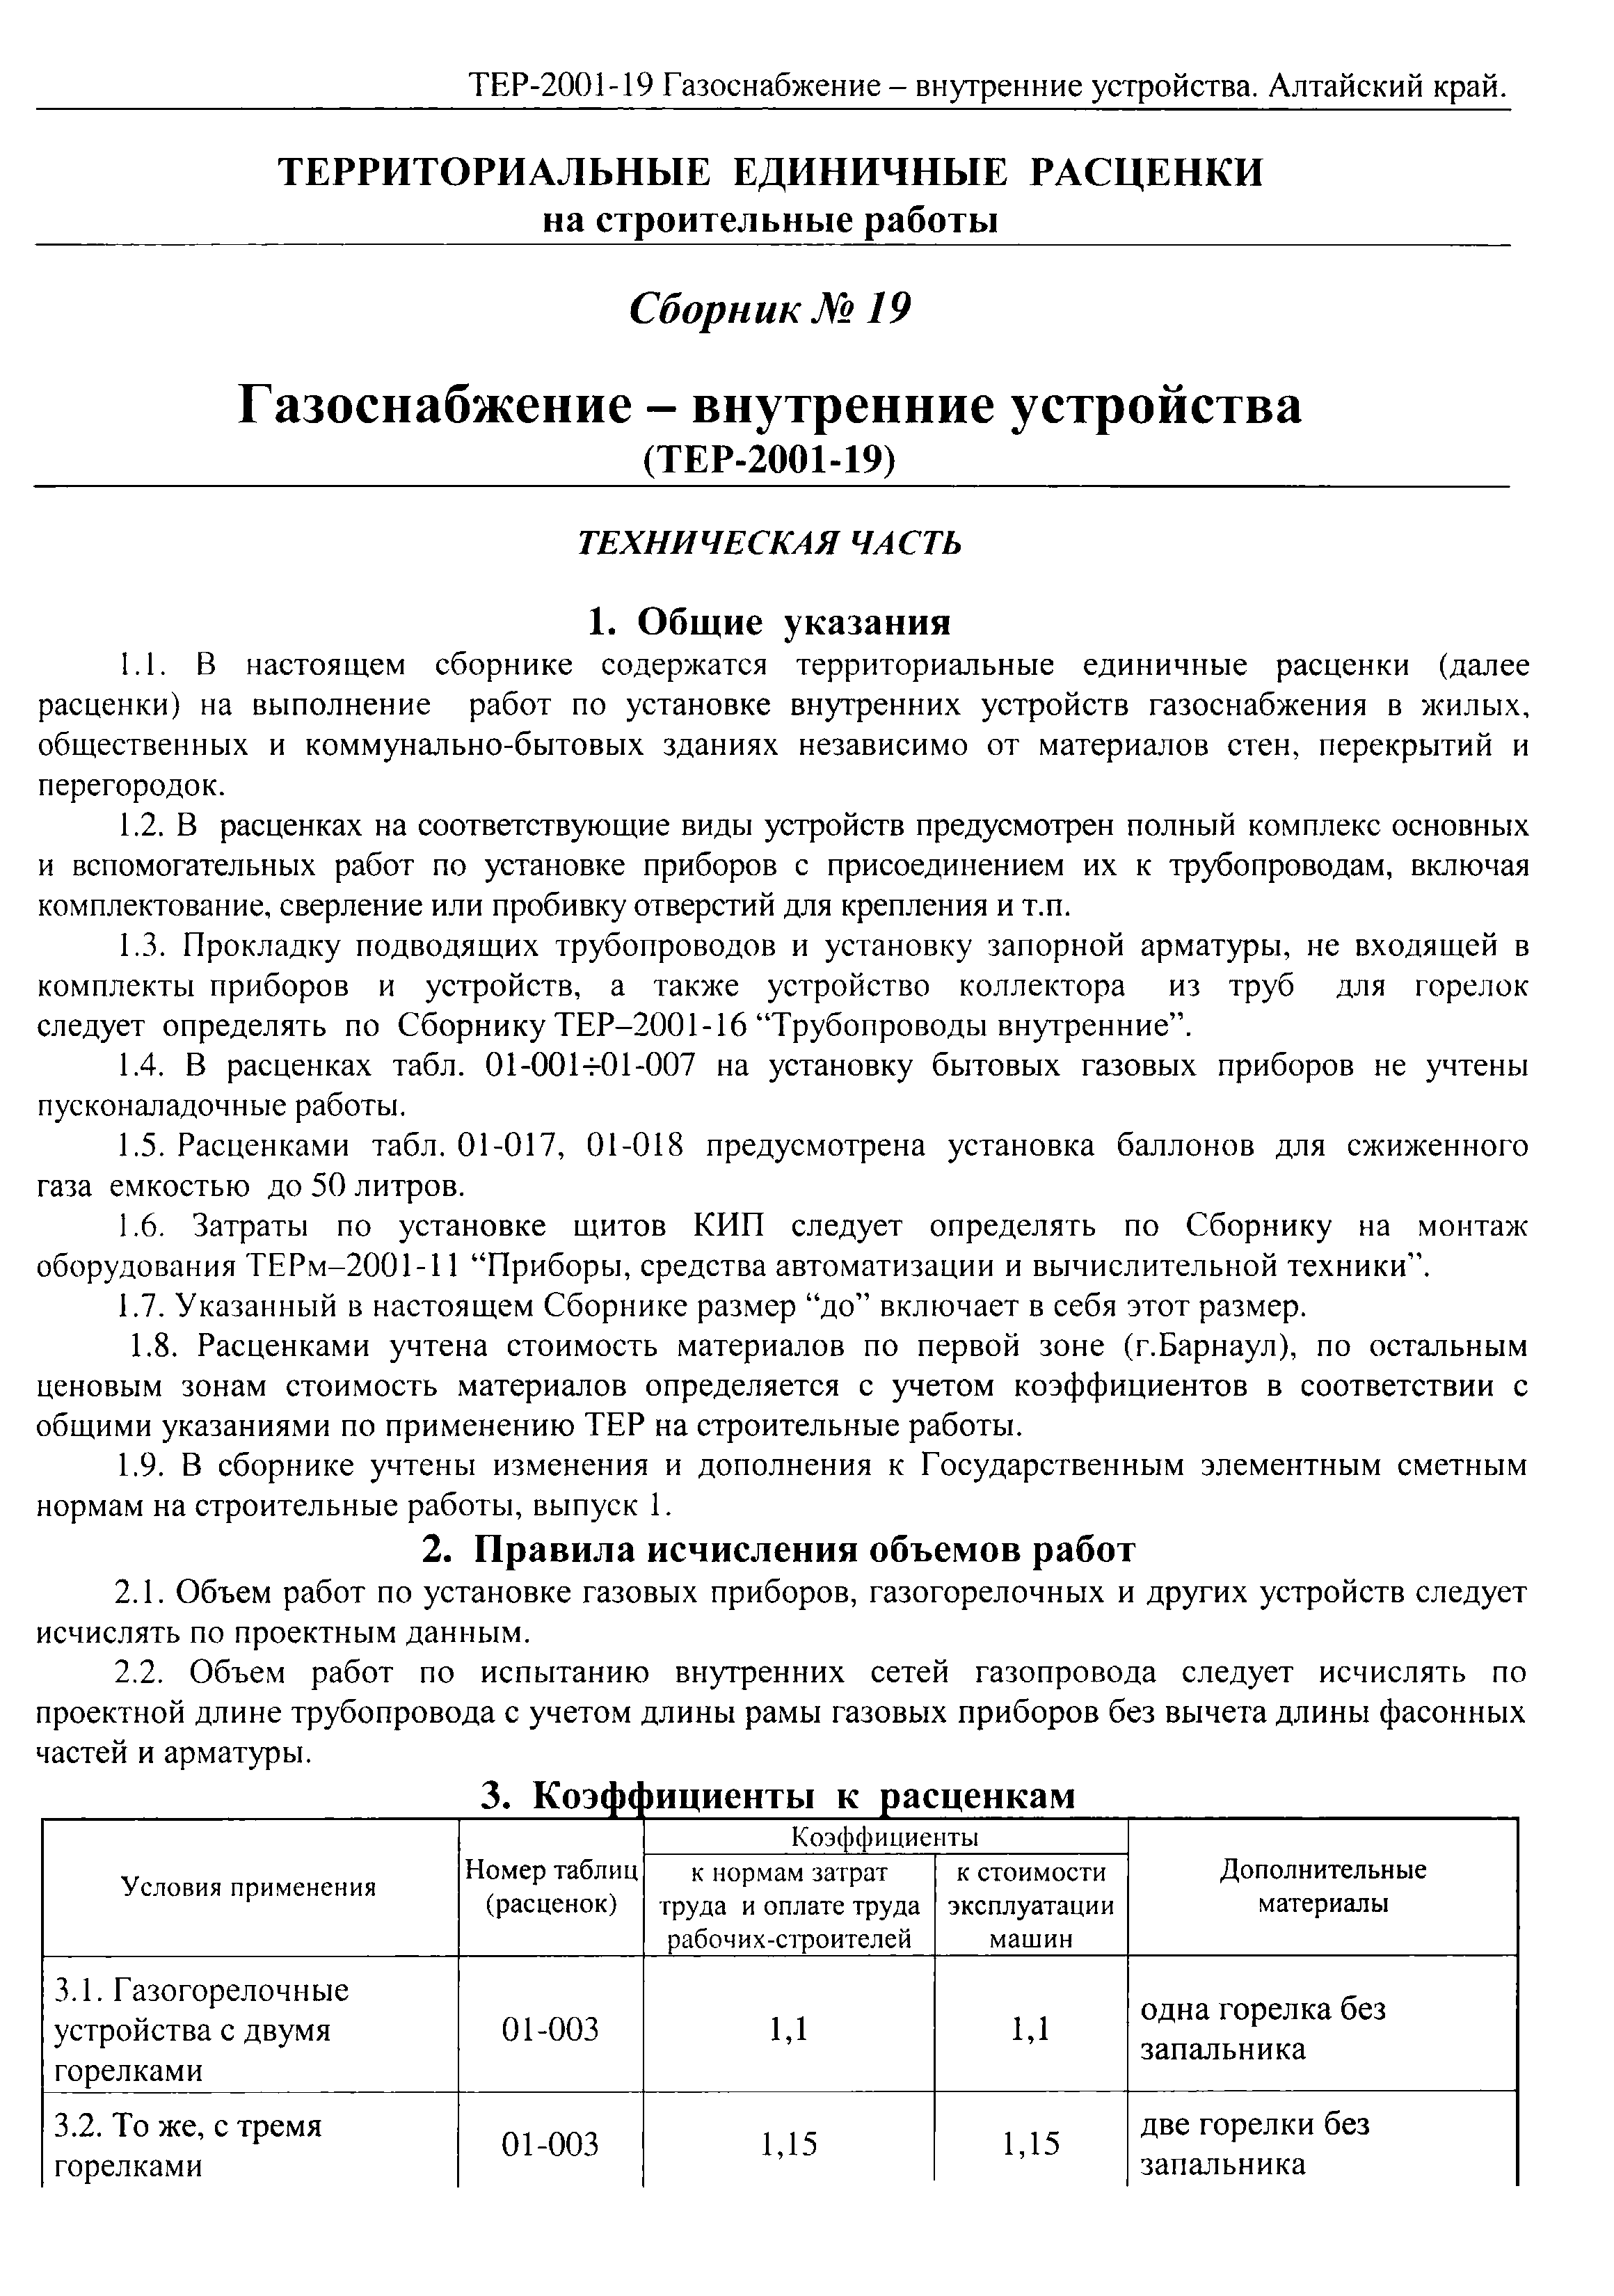 ТЕР Алтайский край 2001-19